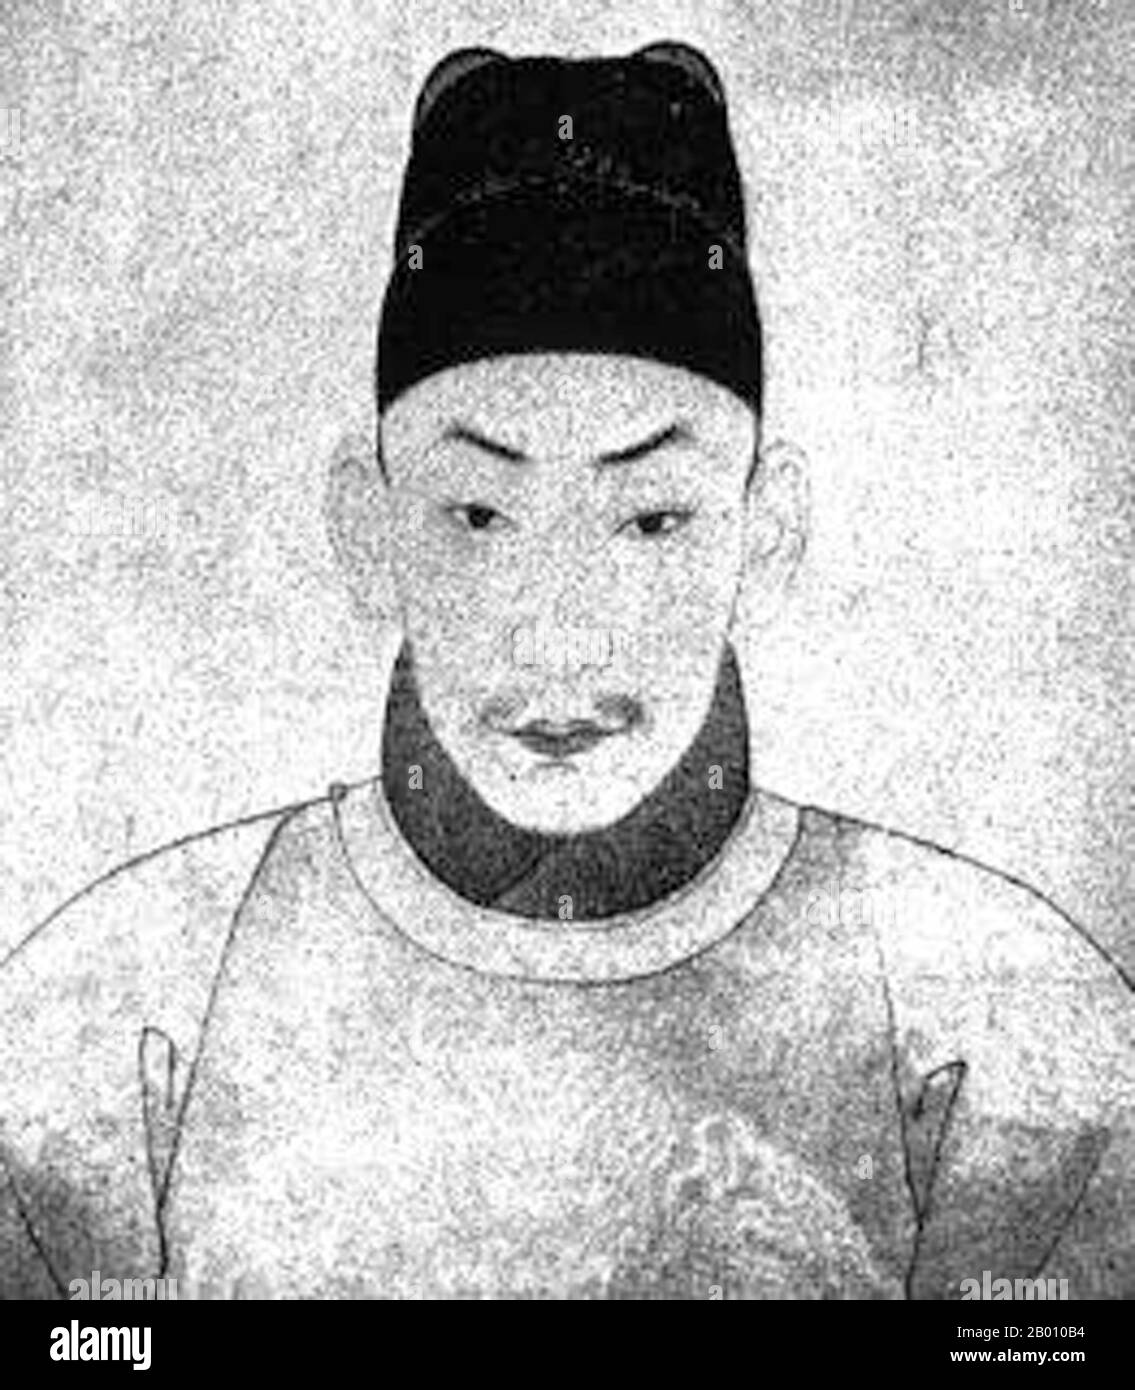 Cina: Imperatore Zhengde, undicesimo sovrano della dinastia Ming (r. 1505-1521). L'imperatore Zhengde (1491-1521) fu l'undicesimo imperatore della Cina (dinastia Ming), che regnò dal 1505 al 1521. Nato Zhu Houzhao, era il figlio maggiore dell'imperatore Hongzhi. Il suo nome d'epoca significa "rettificazione della virtù". Anche se allevato per essere un governante di successo, Zhengde ha trascurato completamente i suoi doveri, avviando una tendenza pericolosa che piagherebbe i futuri imperatori di Ming. L'abbandono dei doveri ufficiali per perseguire i capricci personali porterebbe lentamente all'ascesa di eunuchi potenti che dominerebbero e infine rovinerebbero la dinastia Ming. Foto Stock